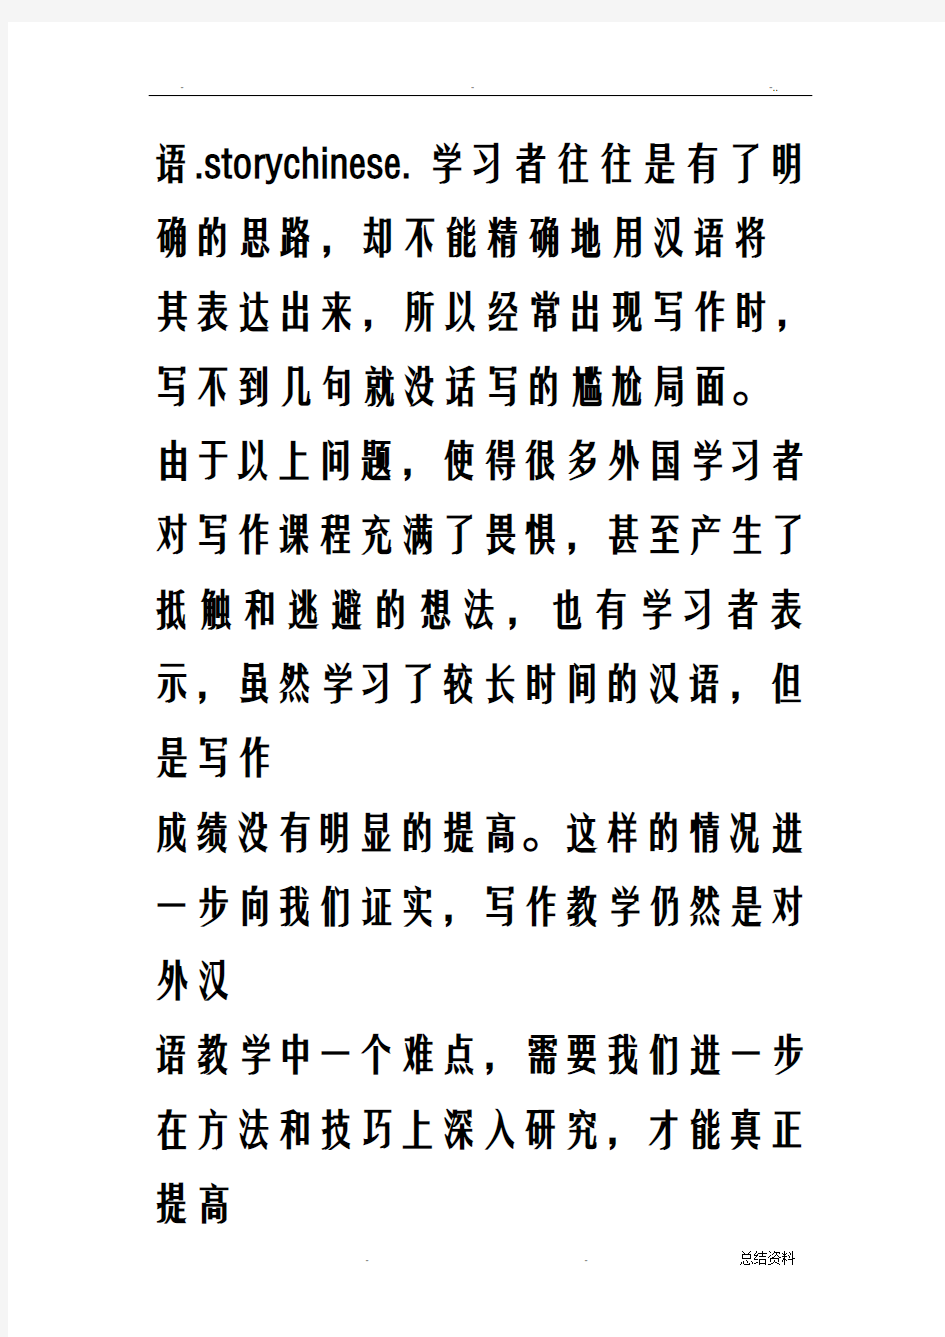 对外汉语写作教学的研究报告